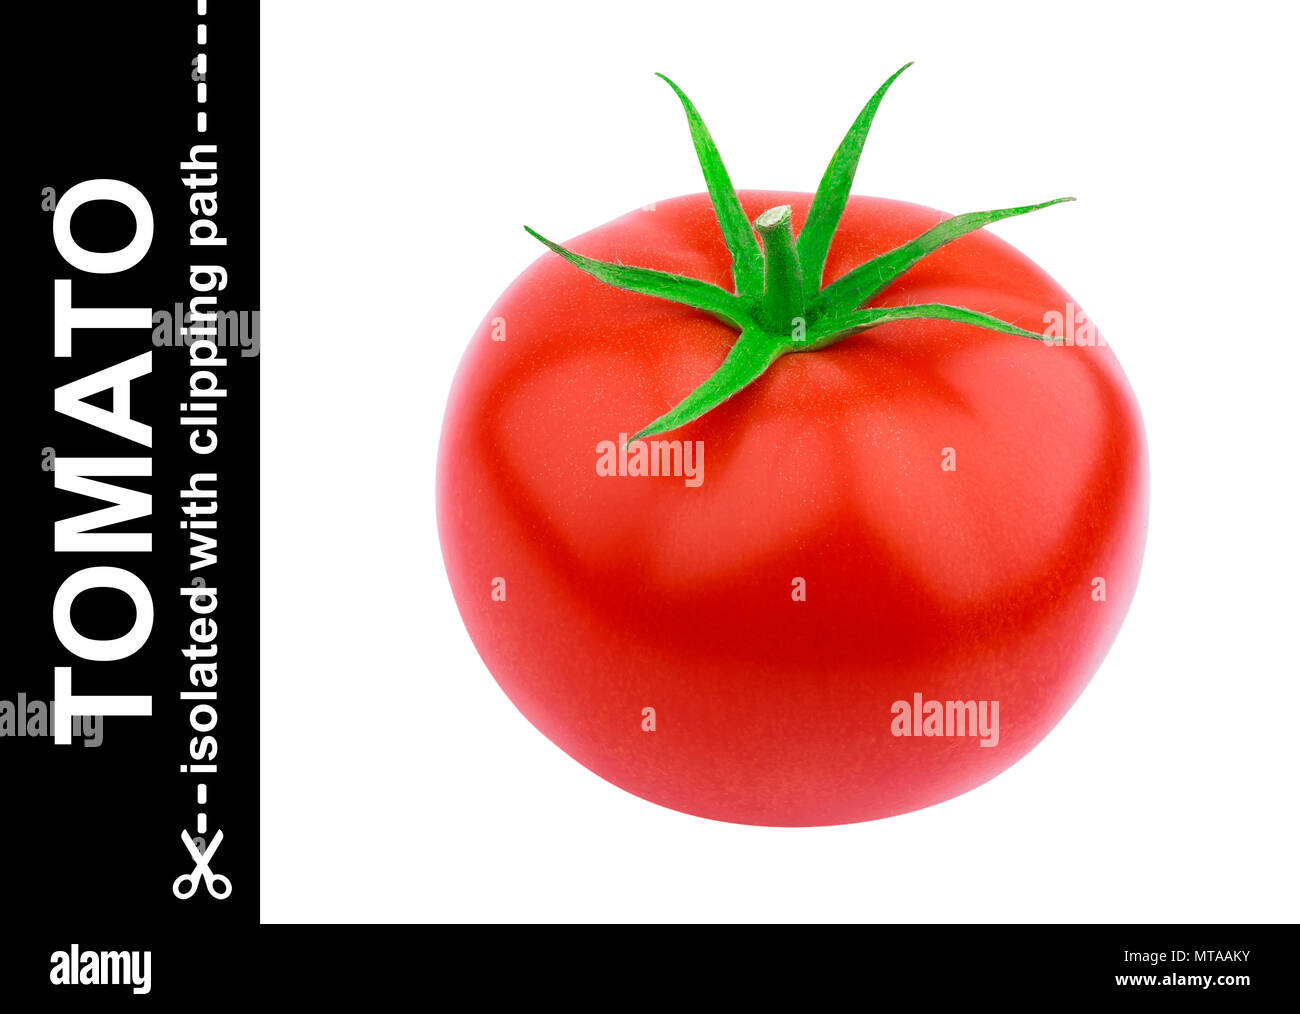 One tomato isolated isolated on white background Stock Photo